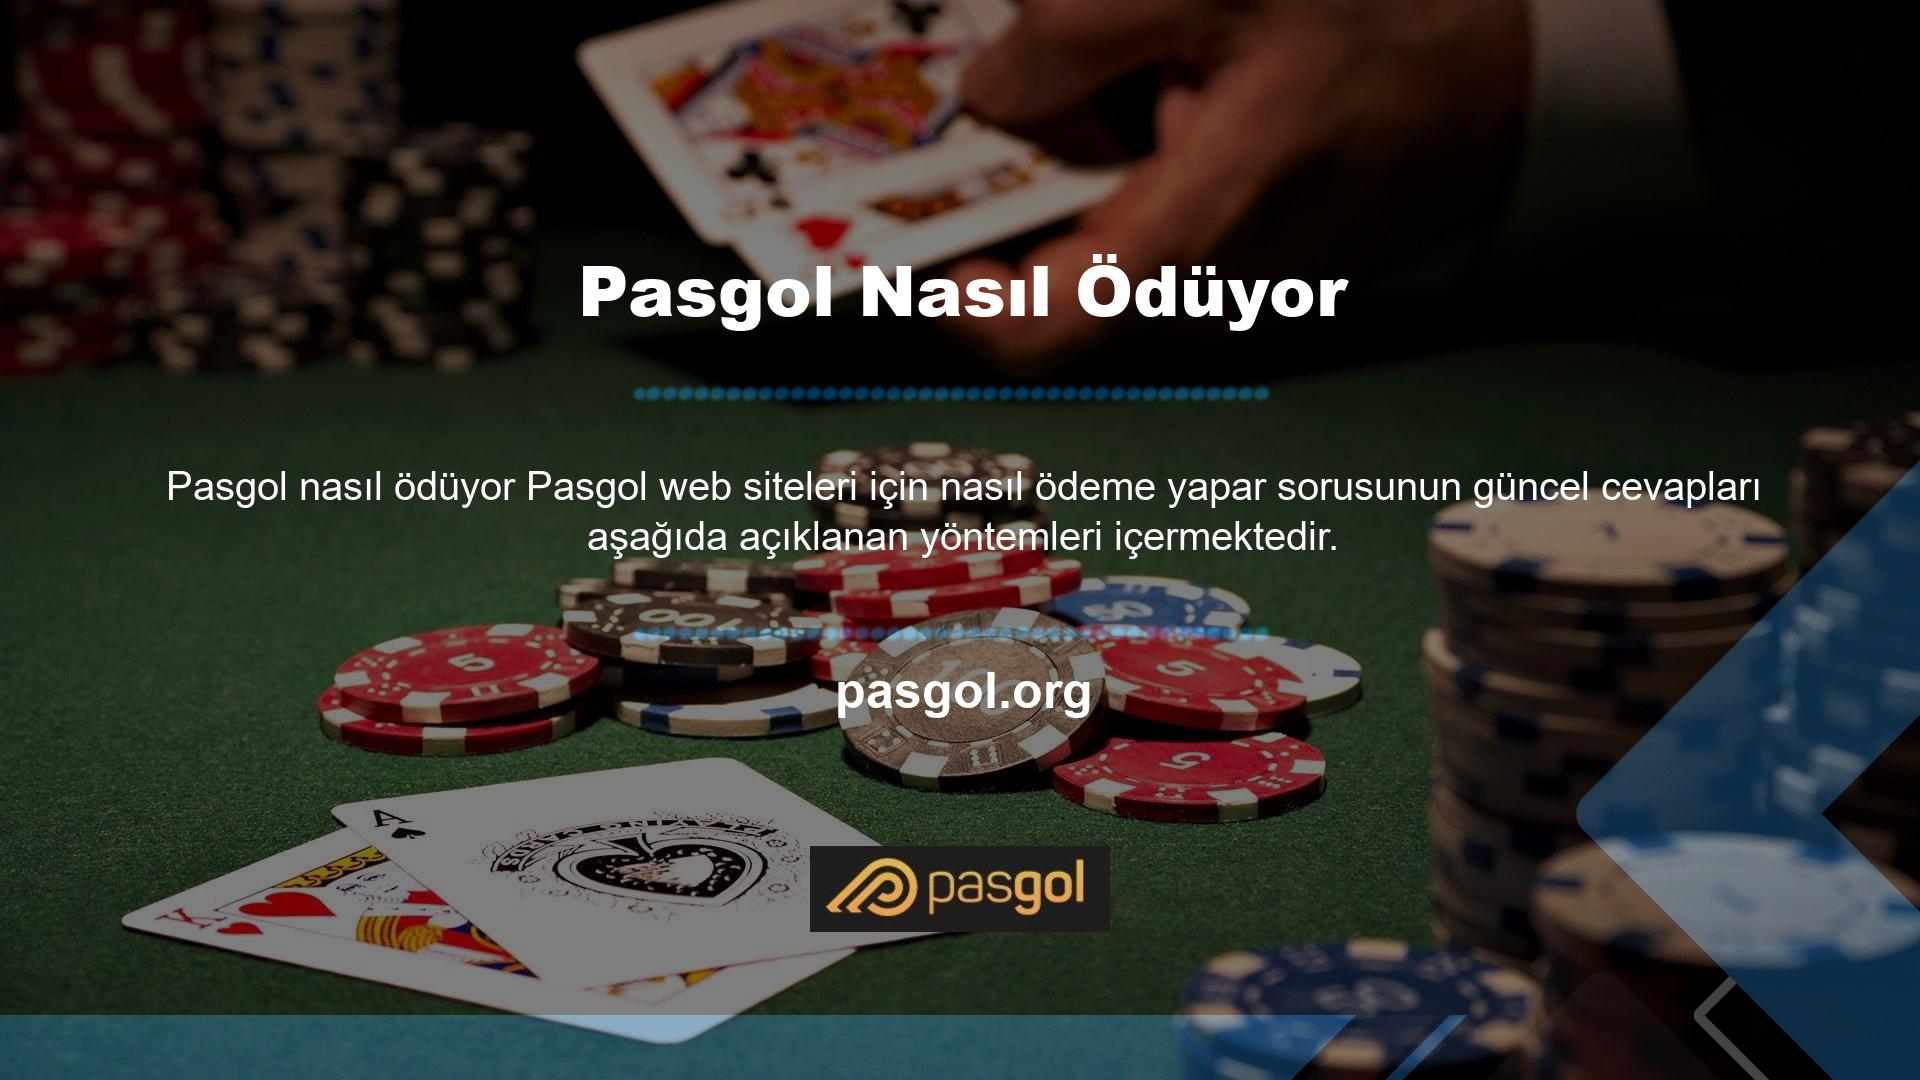 Pasgol web sitesi, yeni Pasgol giriş adresi aracılığıyla bir para çekme talep formu doldurarak tüm kullanıcılar için para çekme işlemine izin verecektir